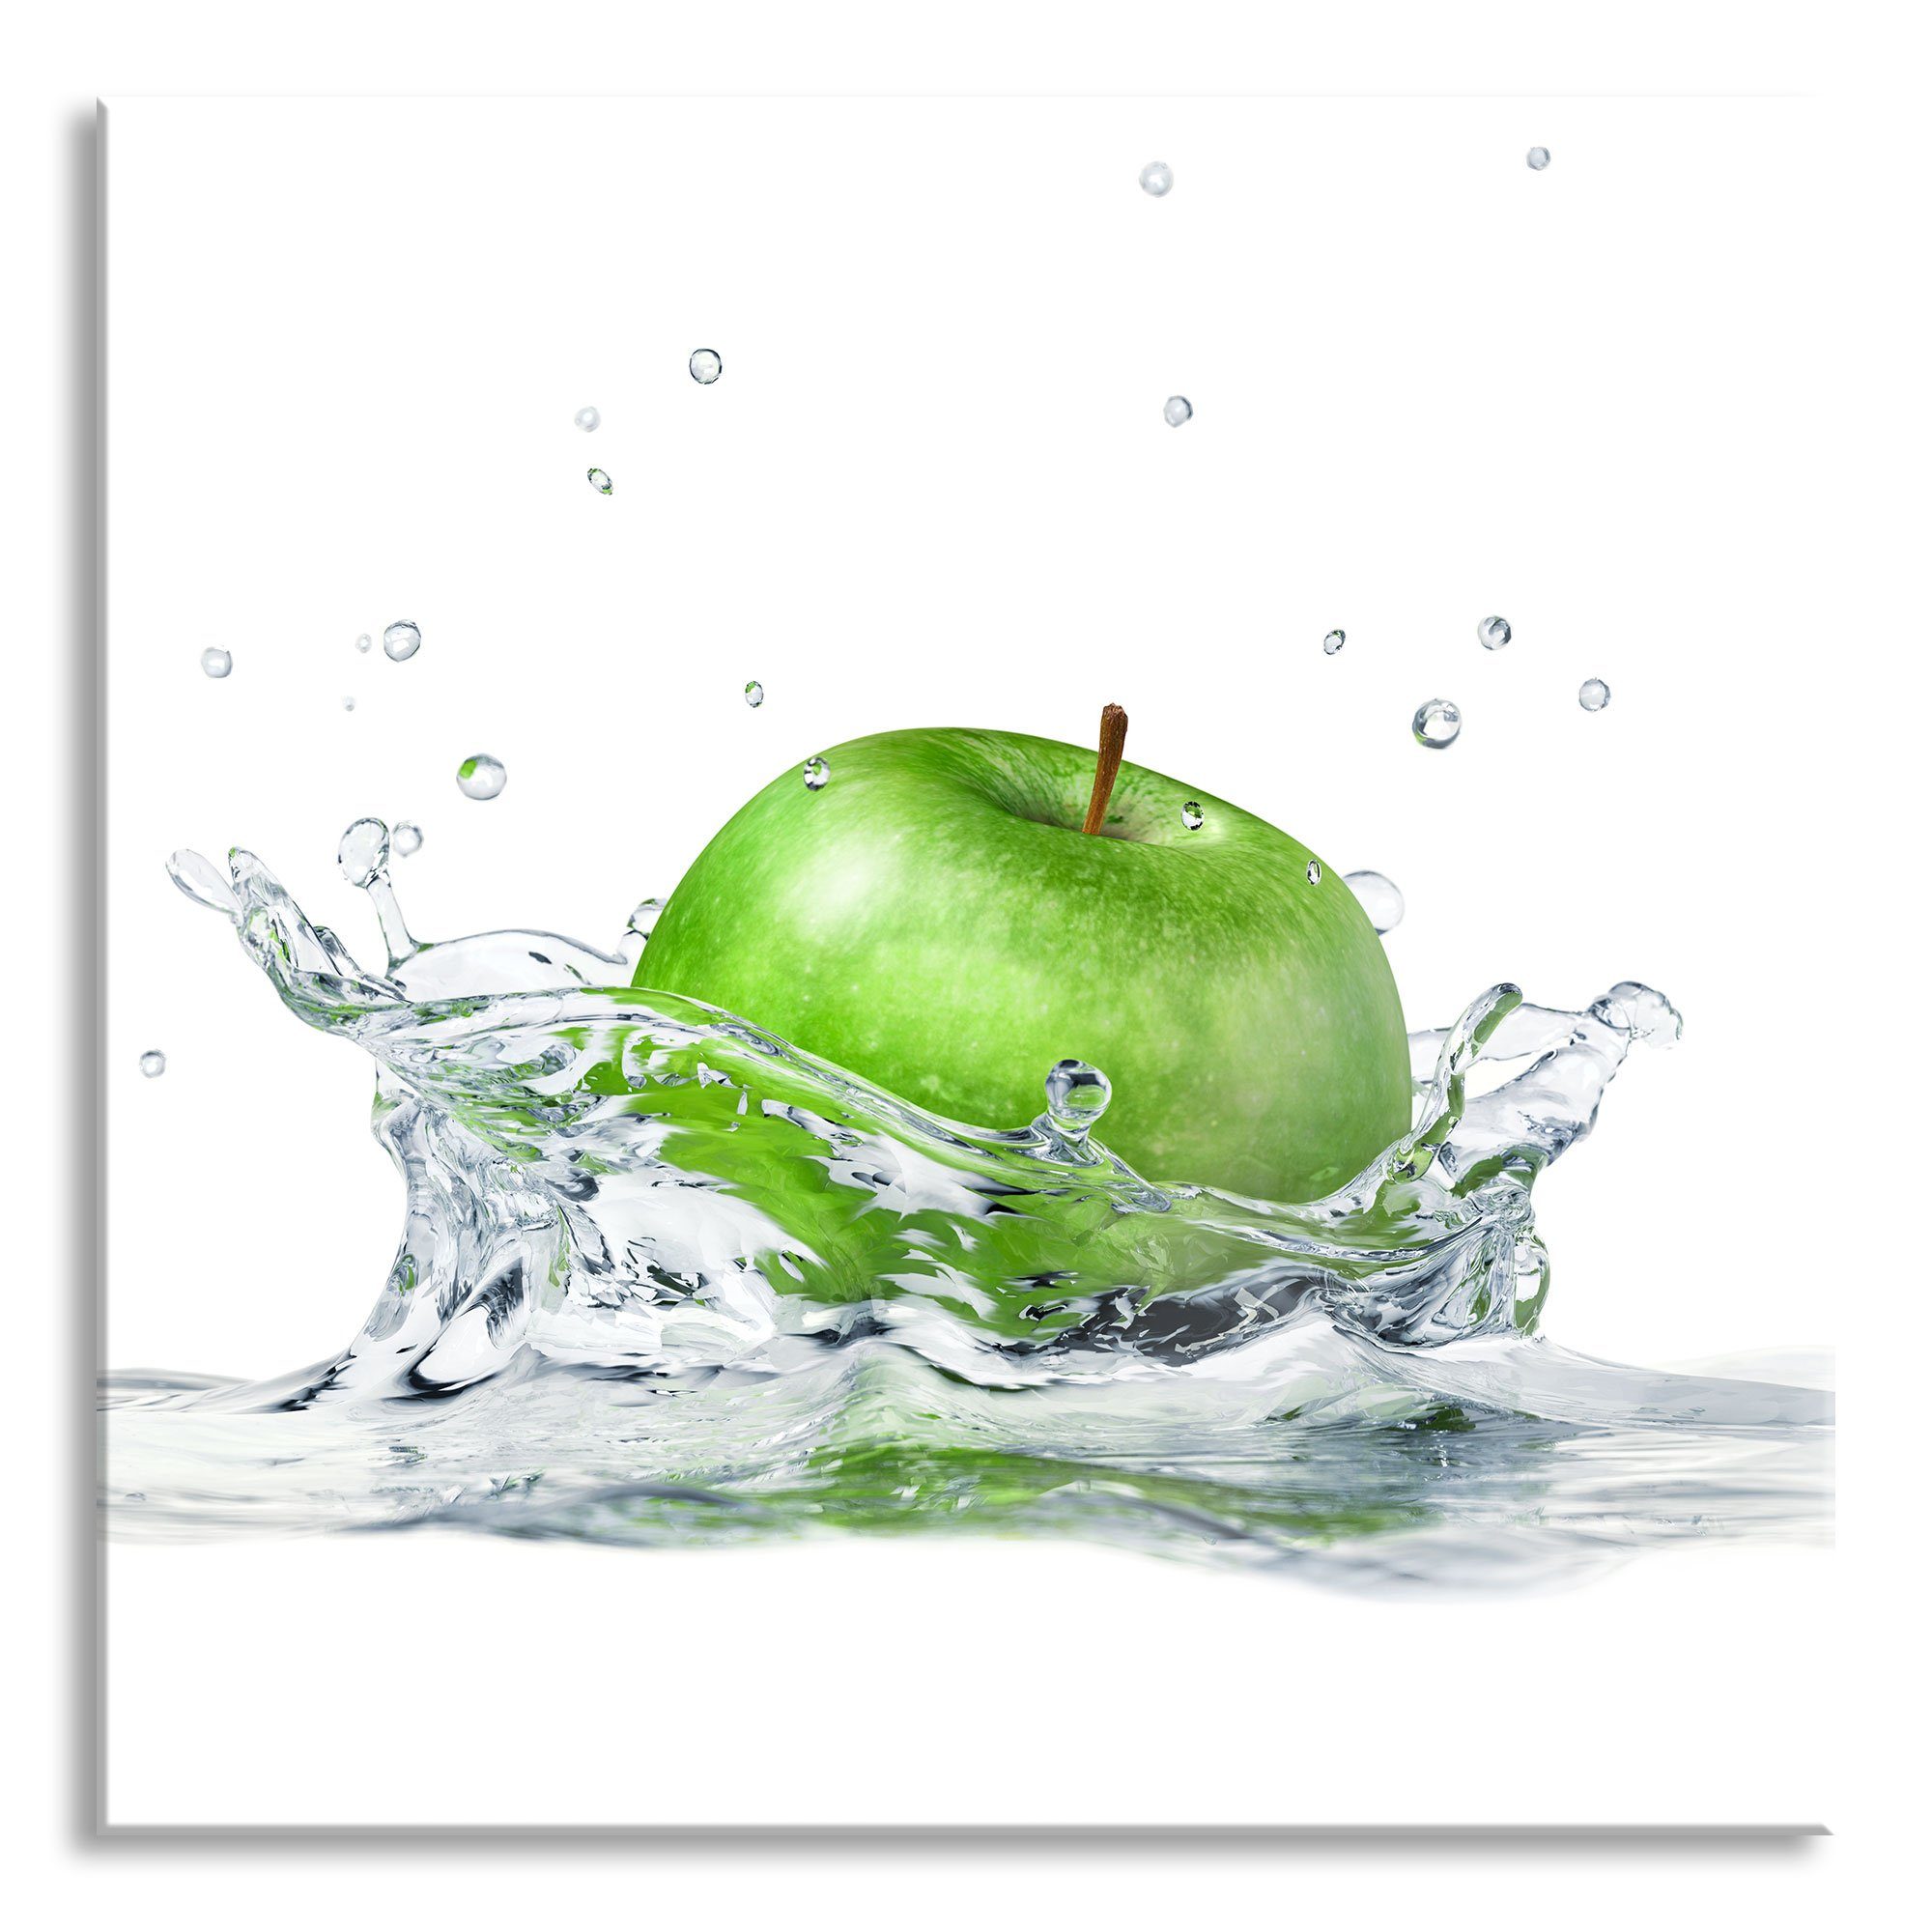 Pixxprint Glasbild Grüner Apfel fällt in Wasser, Grüner Apfel fällt in Wasser (1 St), Glasbild aus Echtglas, inkl. Aufhängungen und Abstandshalter